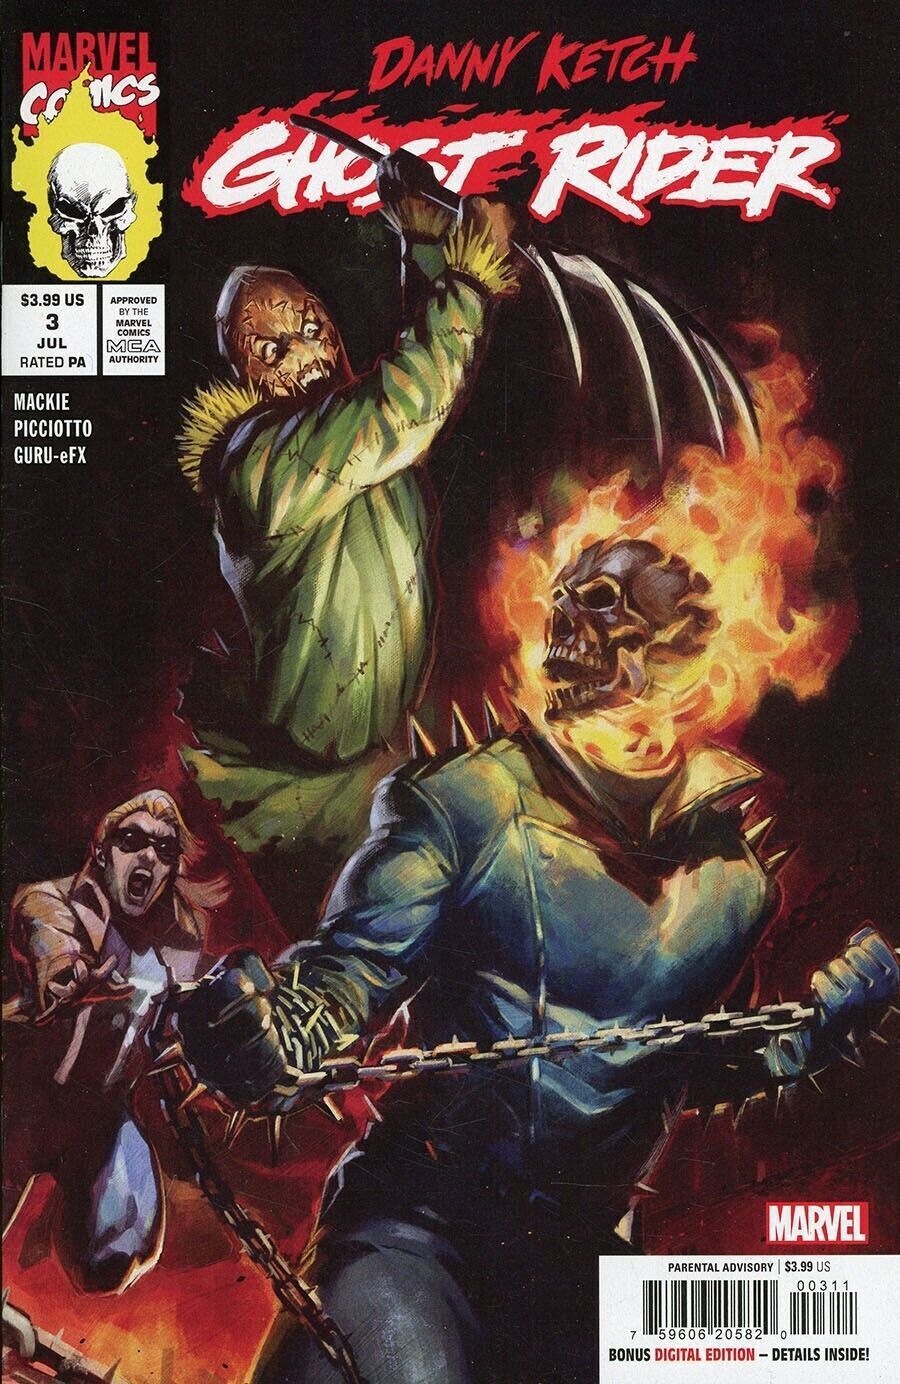  DANNY KETCH: GHOST RIDER #3 (2023)- CVR (MAIN) Ben Harvey, CVR SERGIO DAVILA VAR- MARVEL- Coinz Comics 